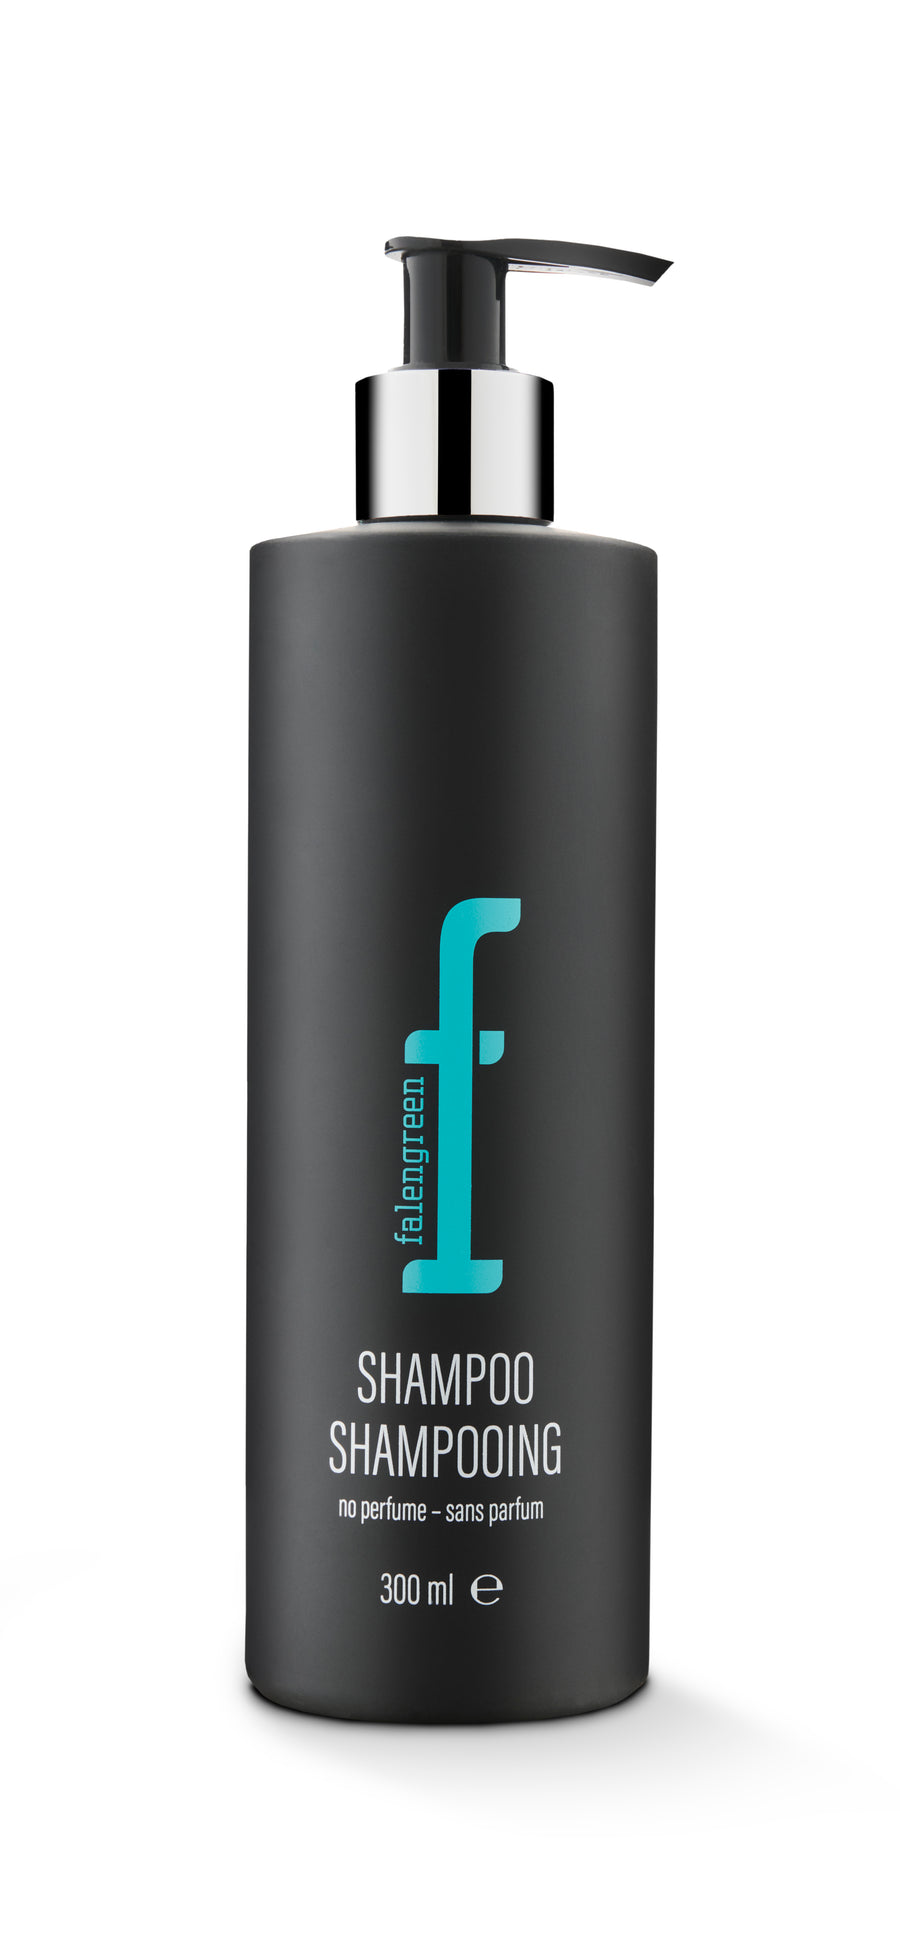 Volume shampoo – No. 04 (300ml)